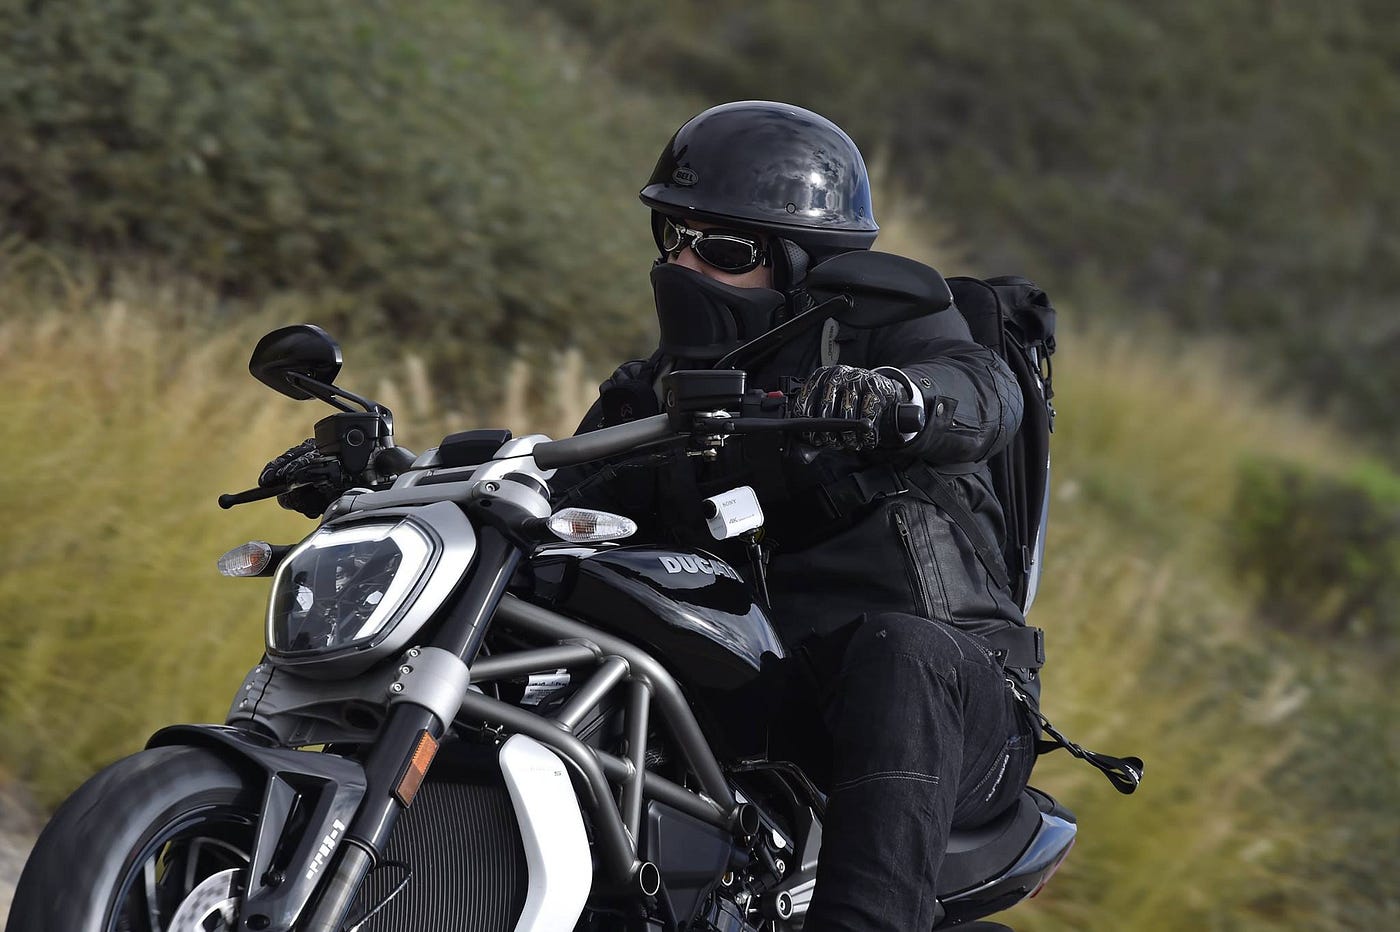 Motosiklet Kask Modelleri Nelerdir? | by MotoPlus | Medium